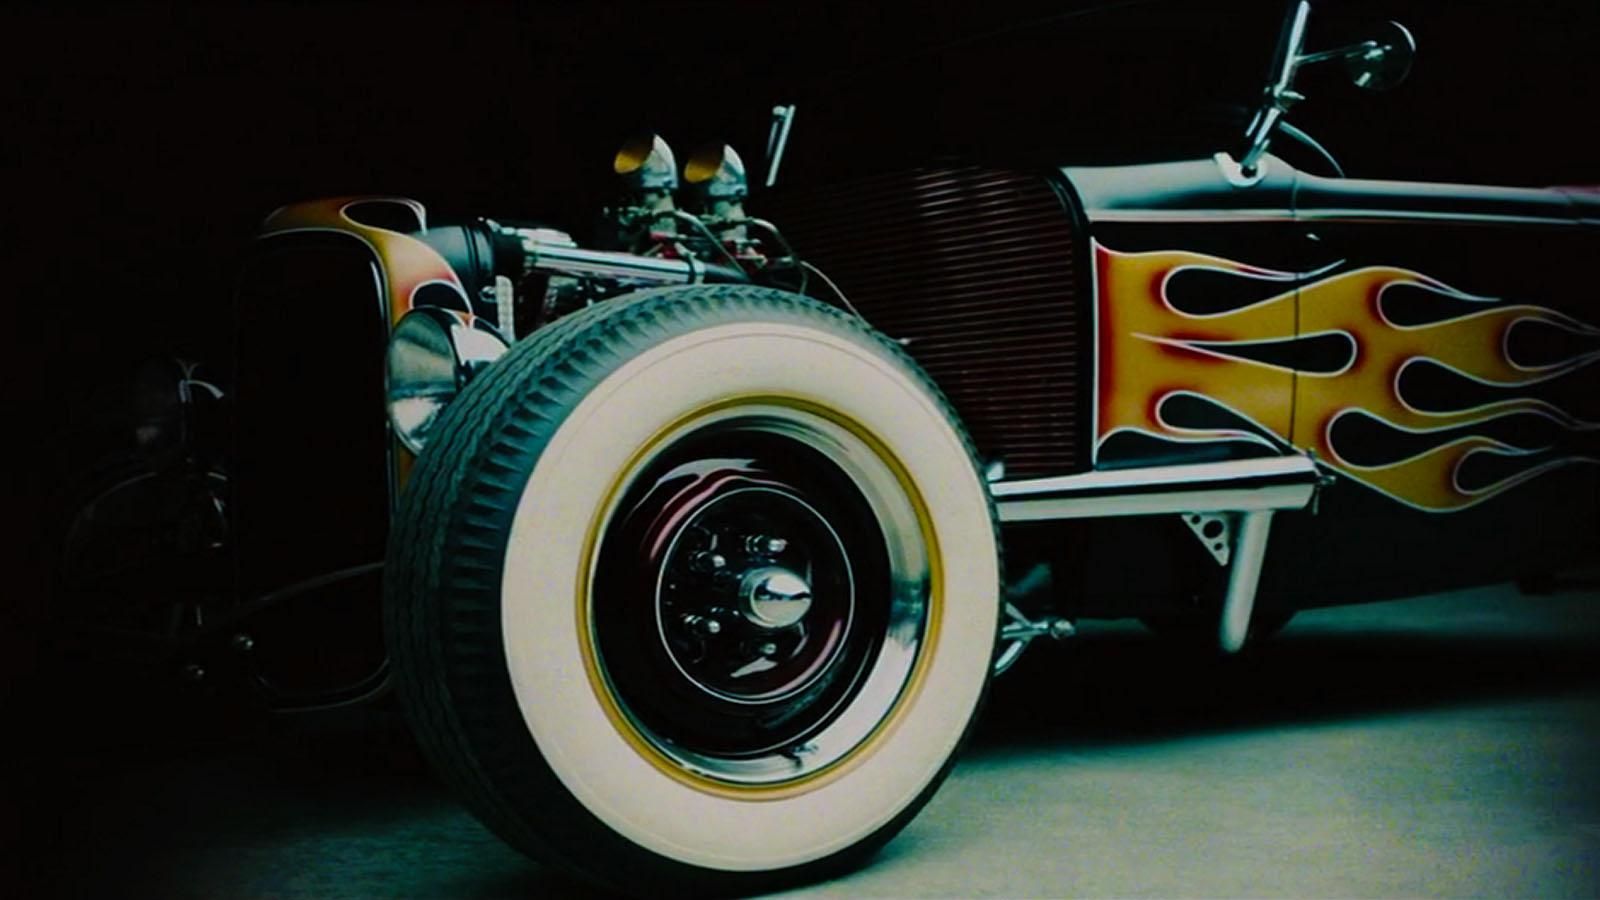 Tony Stark's hot rod screensaver from IM1. Hot rods, Hot rods cars, Car